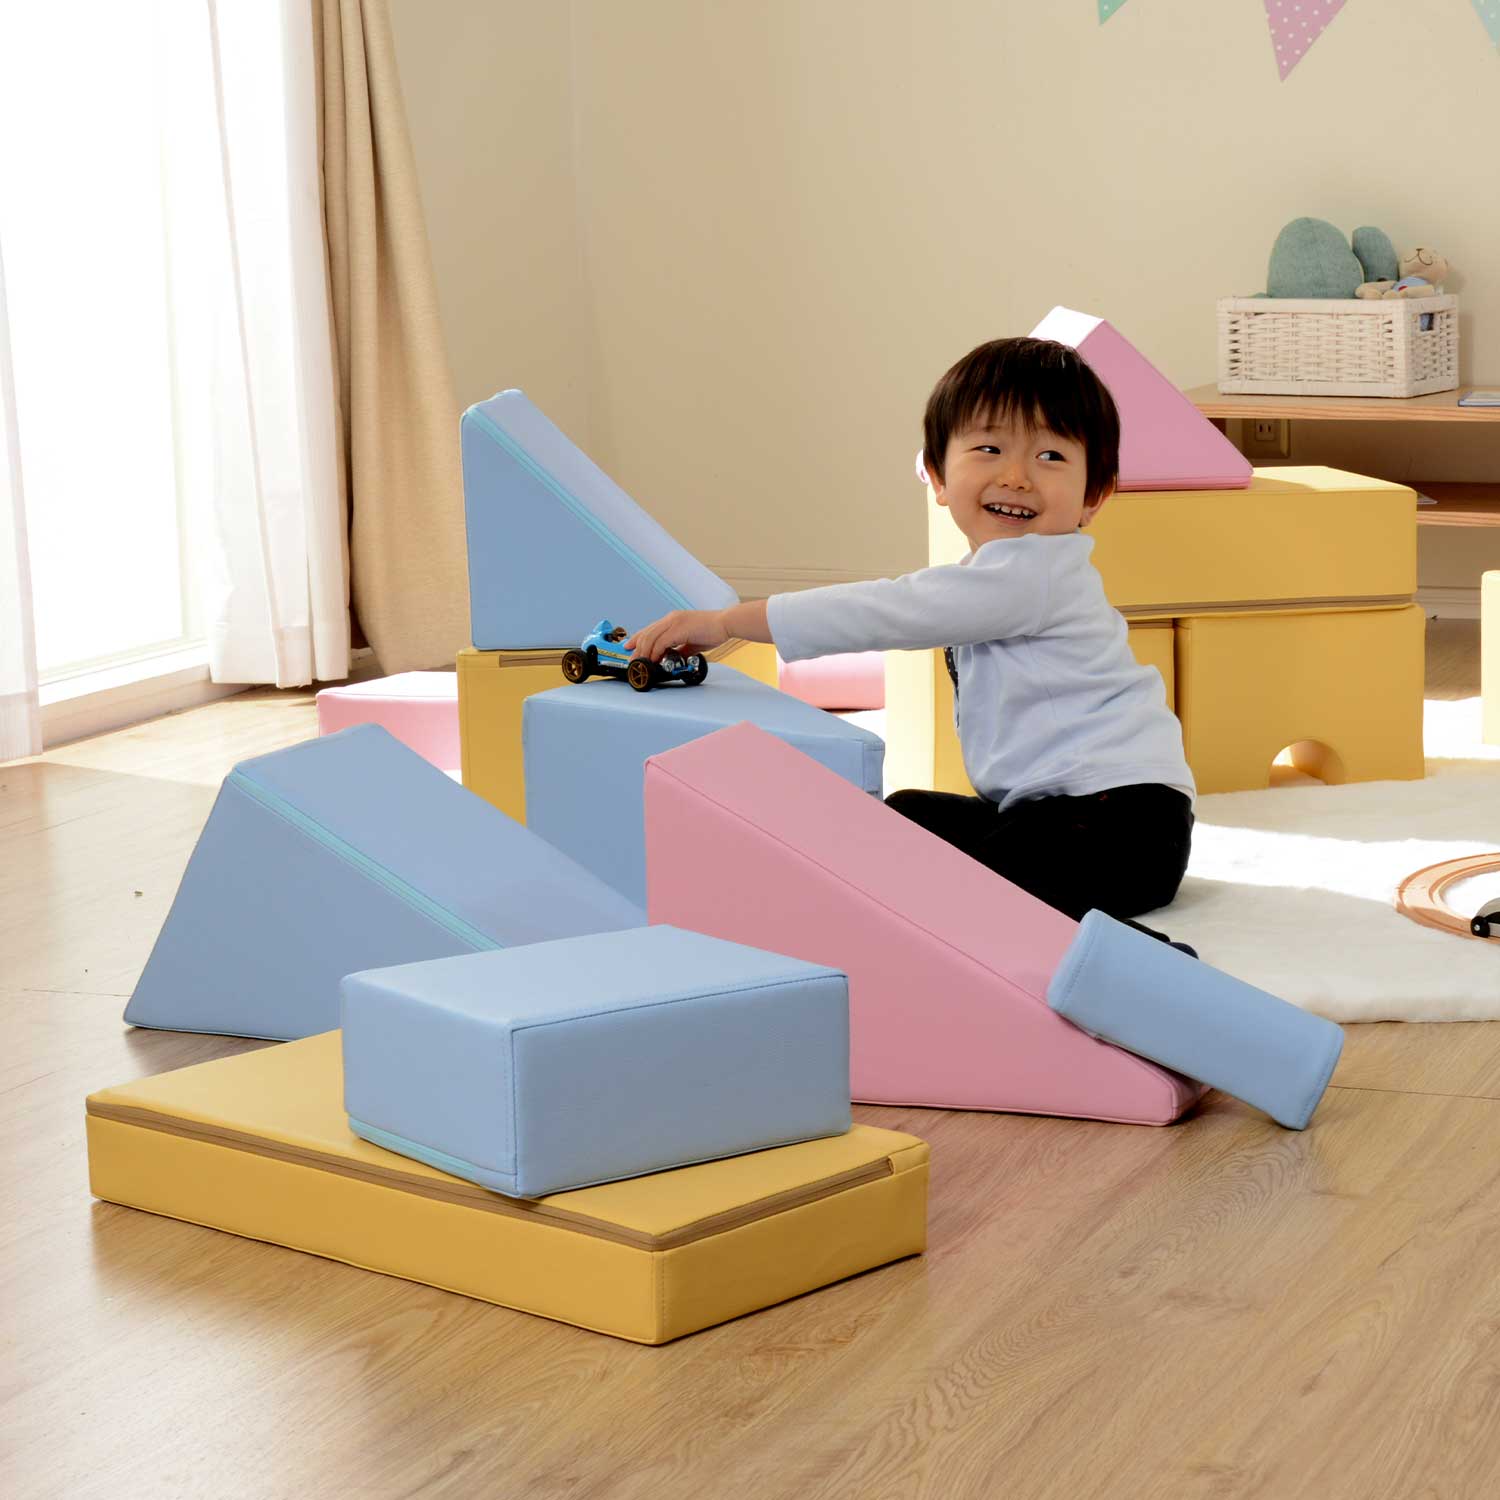 Phụ Kiện Block Toys - Miễn ship - đồ chơi nâng cao trí thông minh